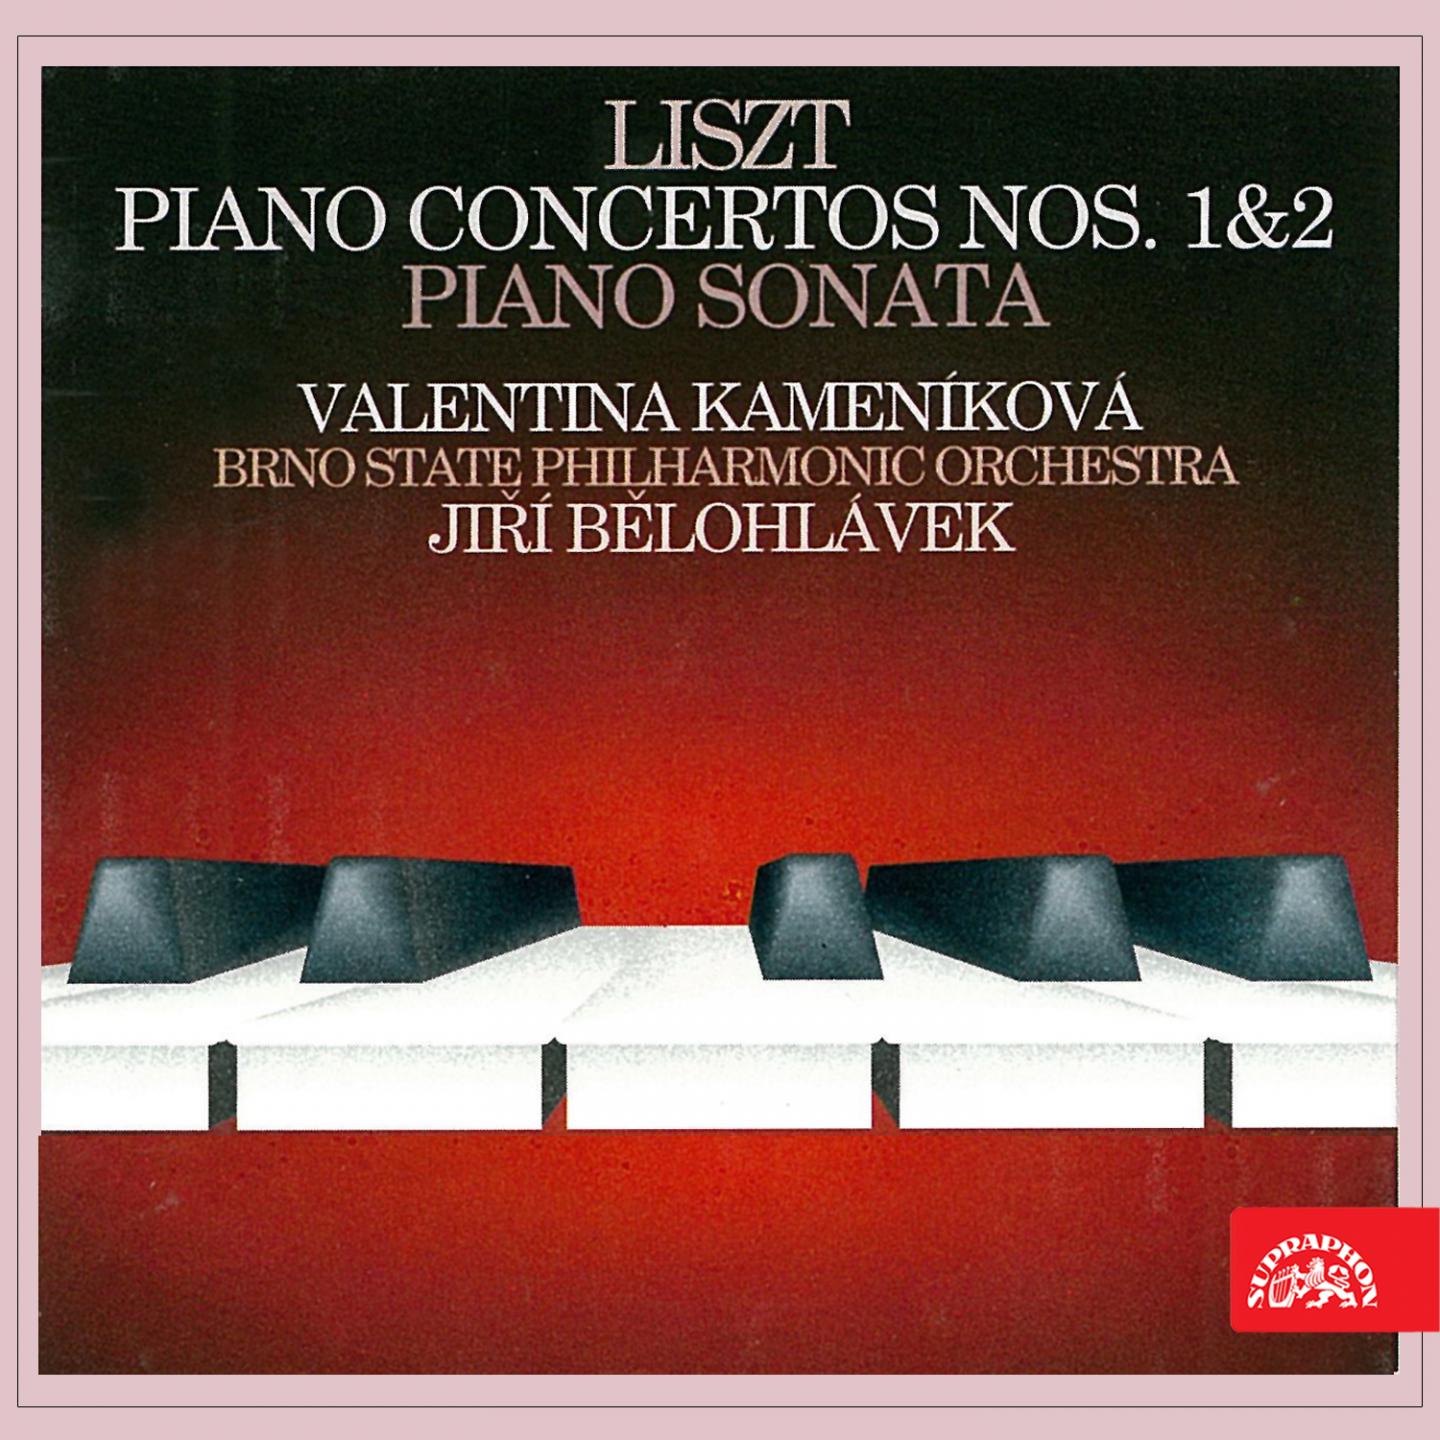 Piano Concerto No. 1 in E-Flat Major, S. 124: IV. Allegro animato